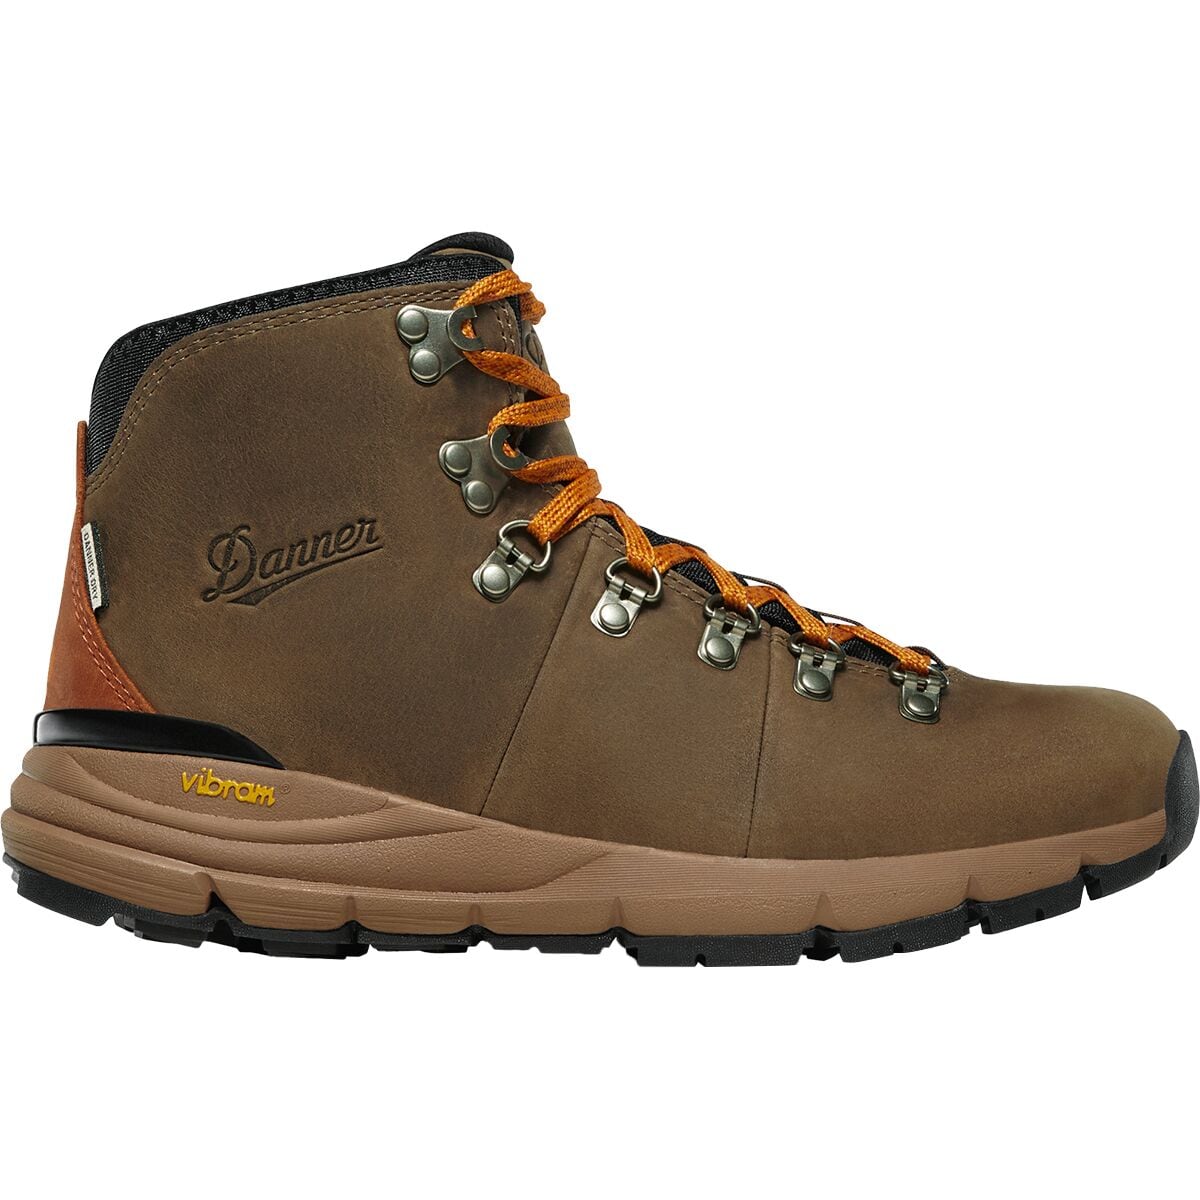 Danner Mountain 600 Full-Grain Hiking Boot - Men's - Footwear